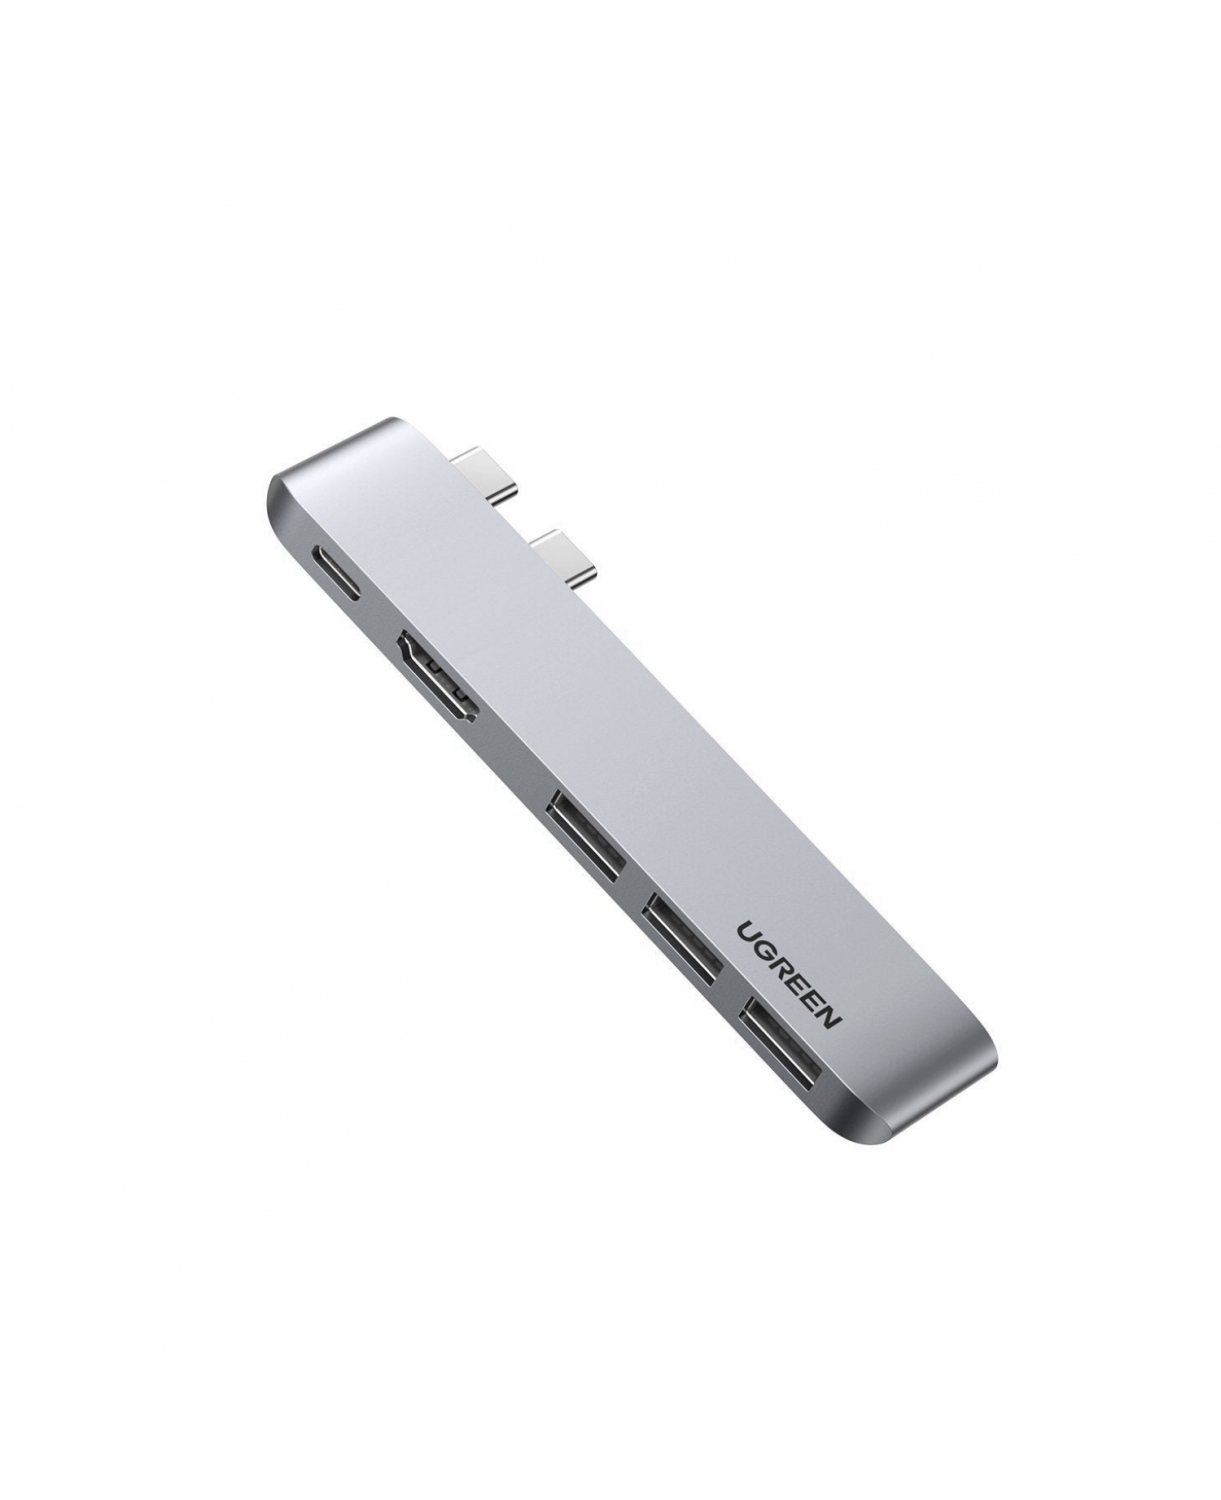 60559 - SUPORTE PARA CONVERSOR FEMEA USB 3.0 A